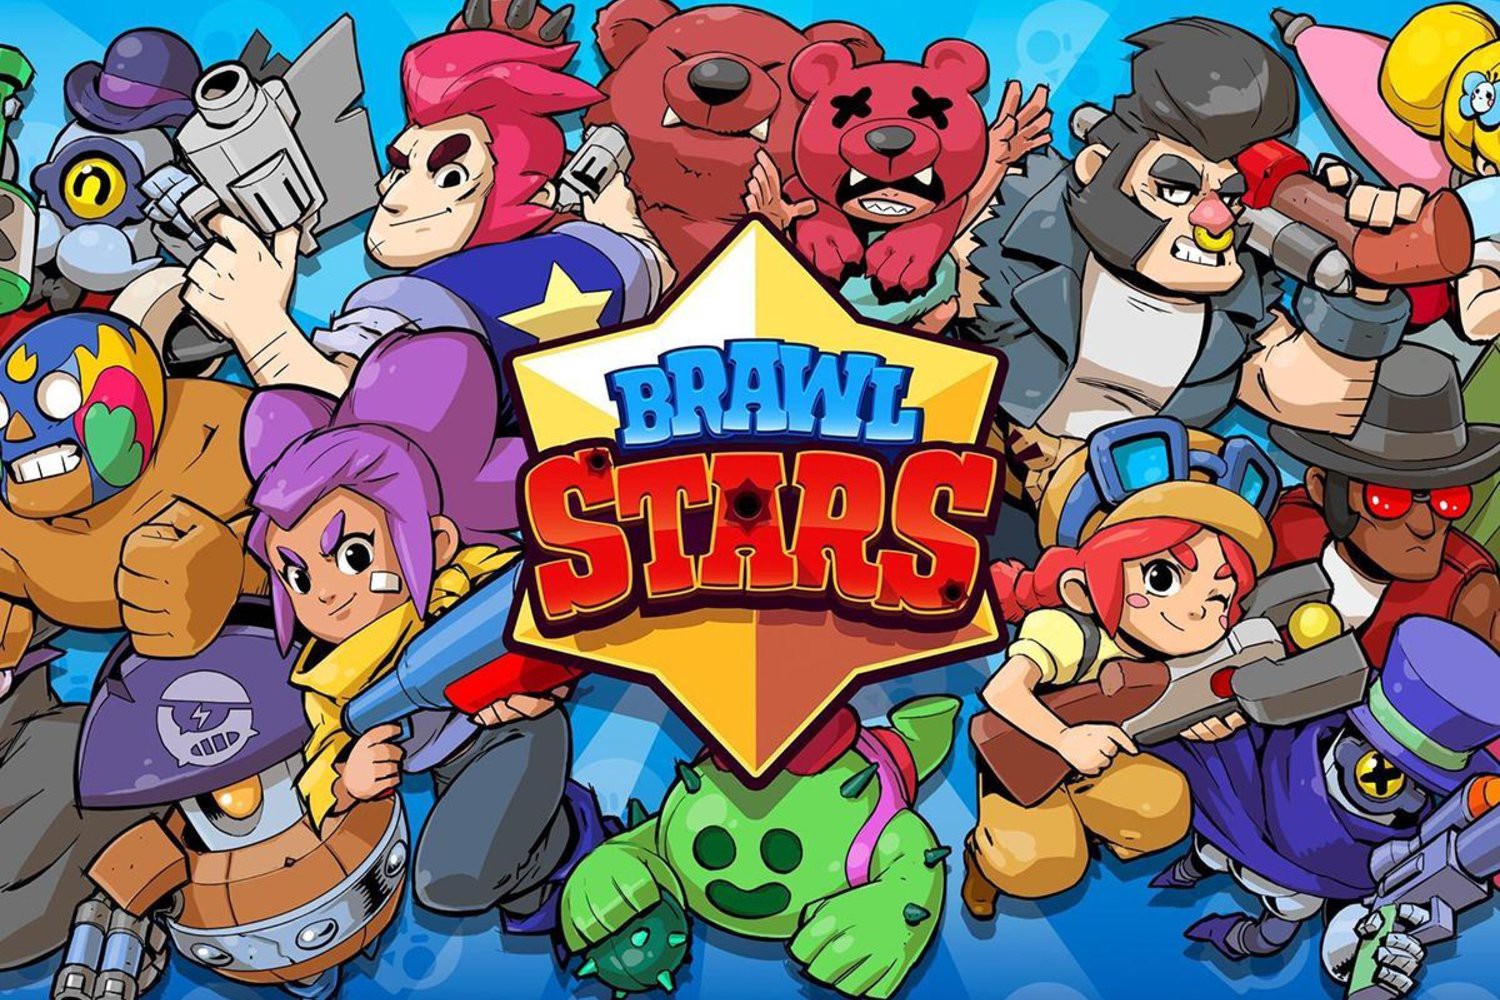 Brawl Stars: como ganhar gemas grátis no jogo para Android e iPhone